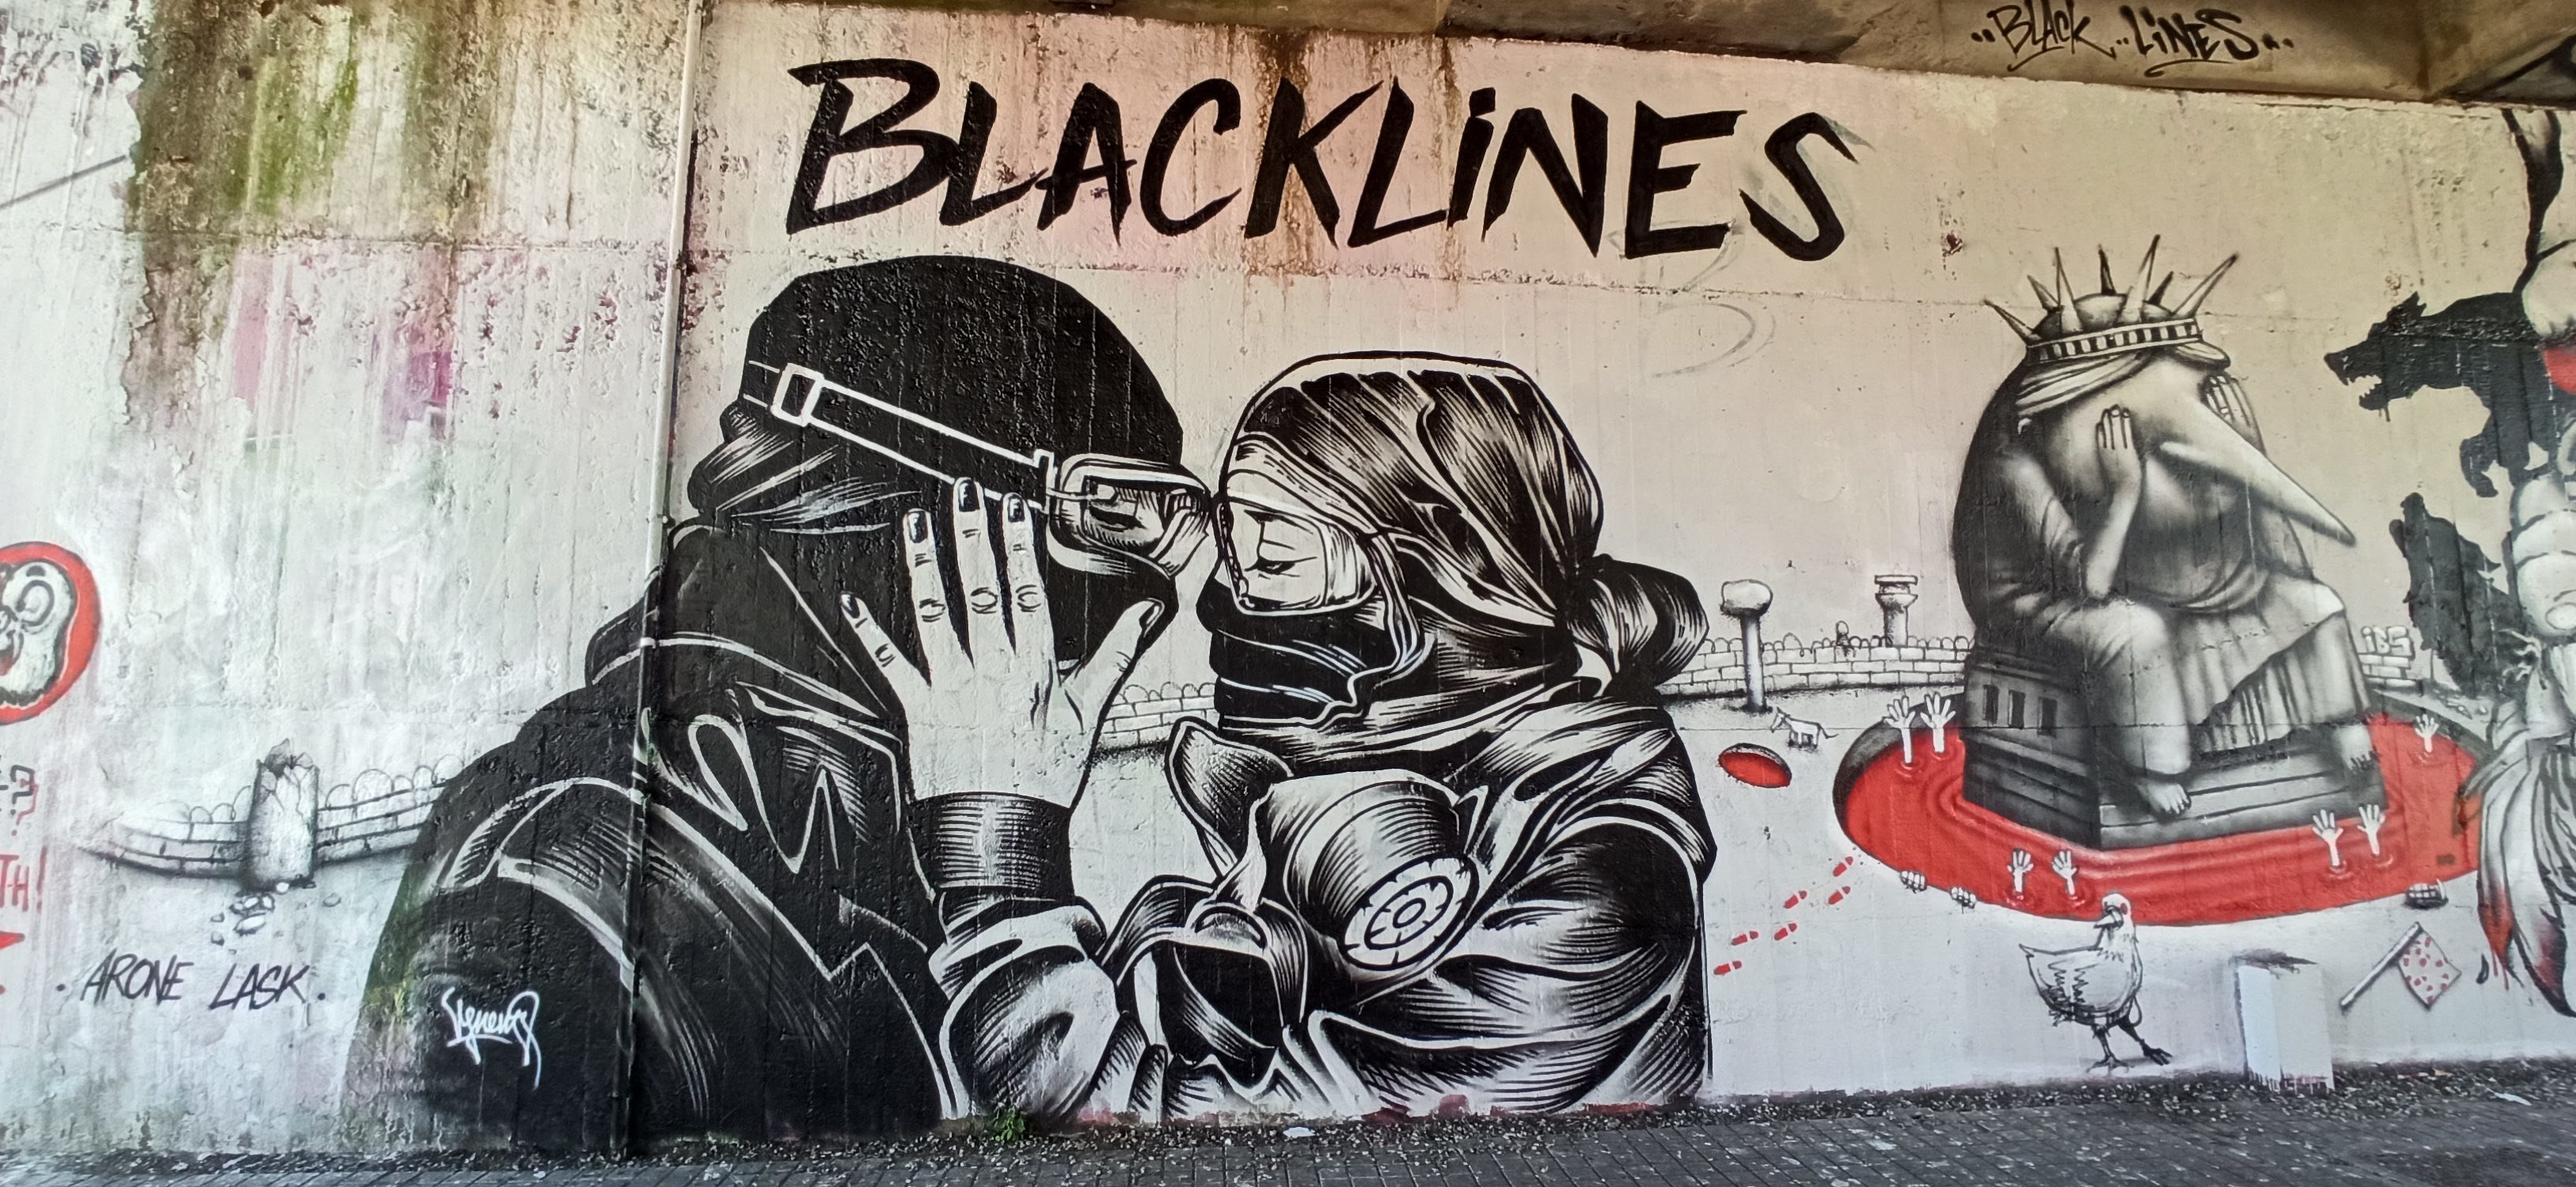 Graffiti 5042 Black lines capturé par Rabot à Nantes France